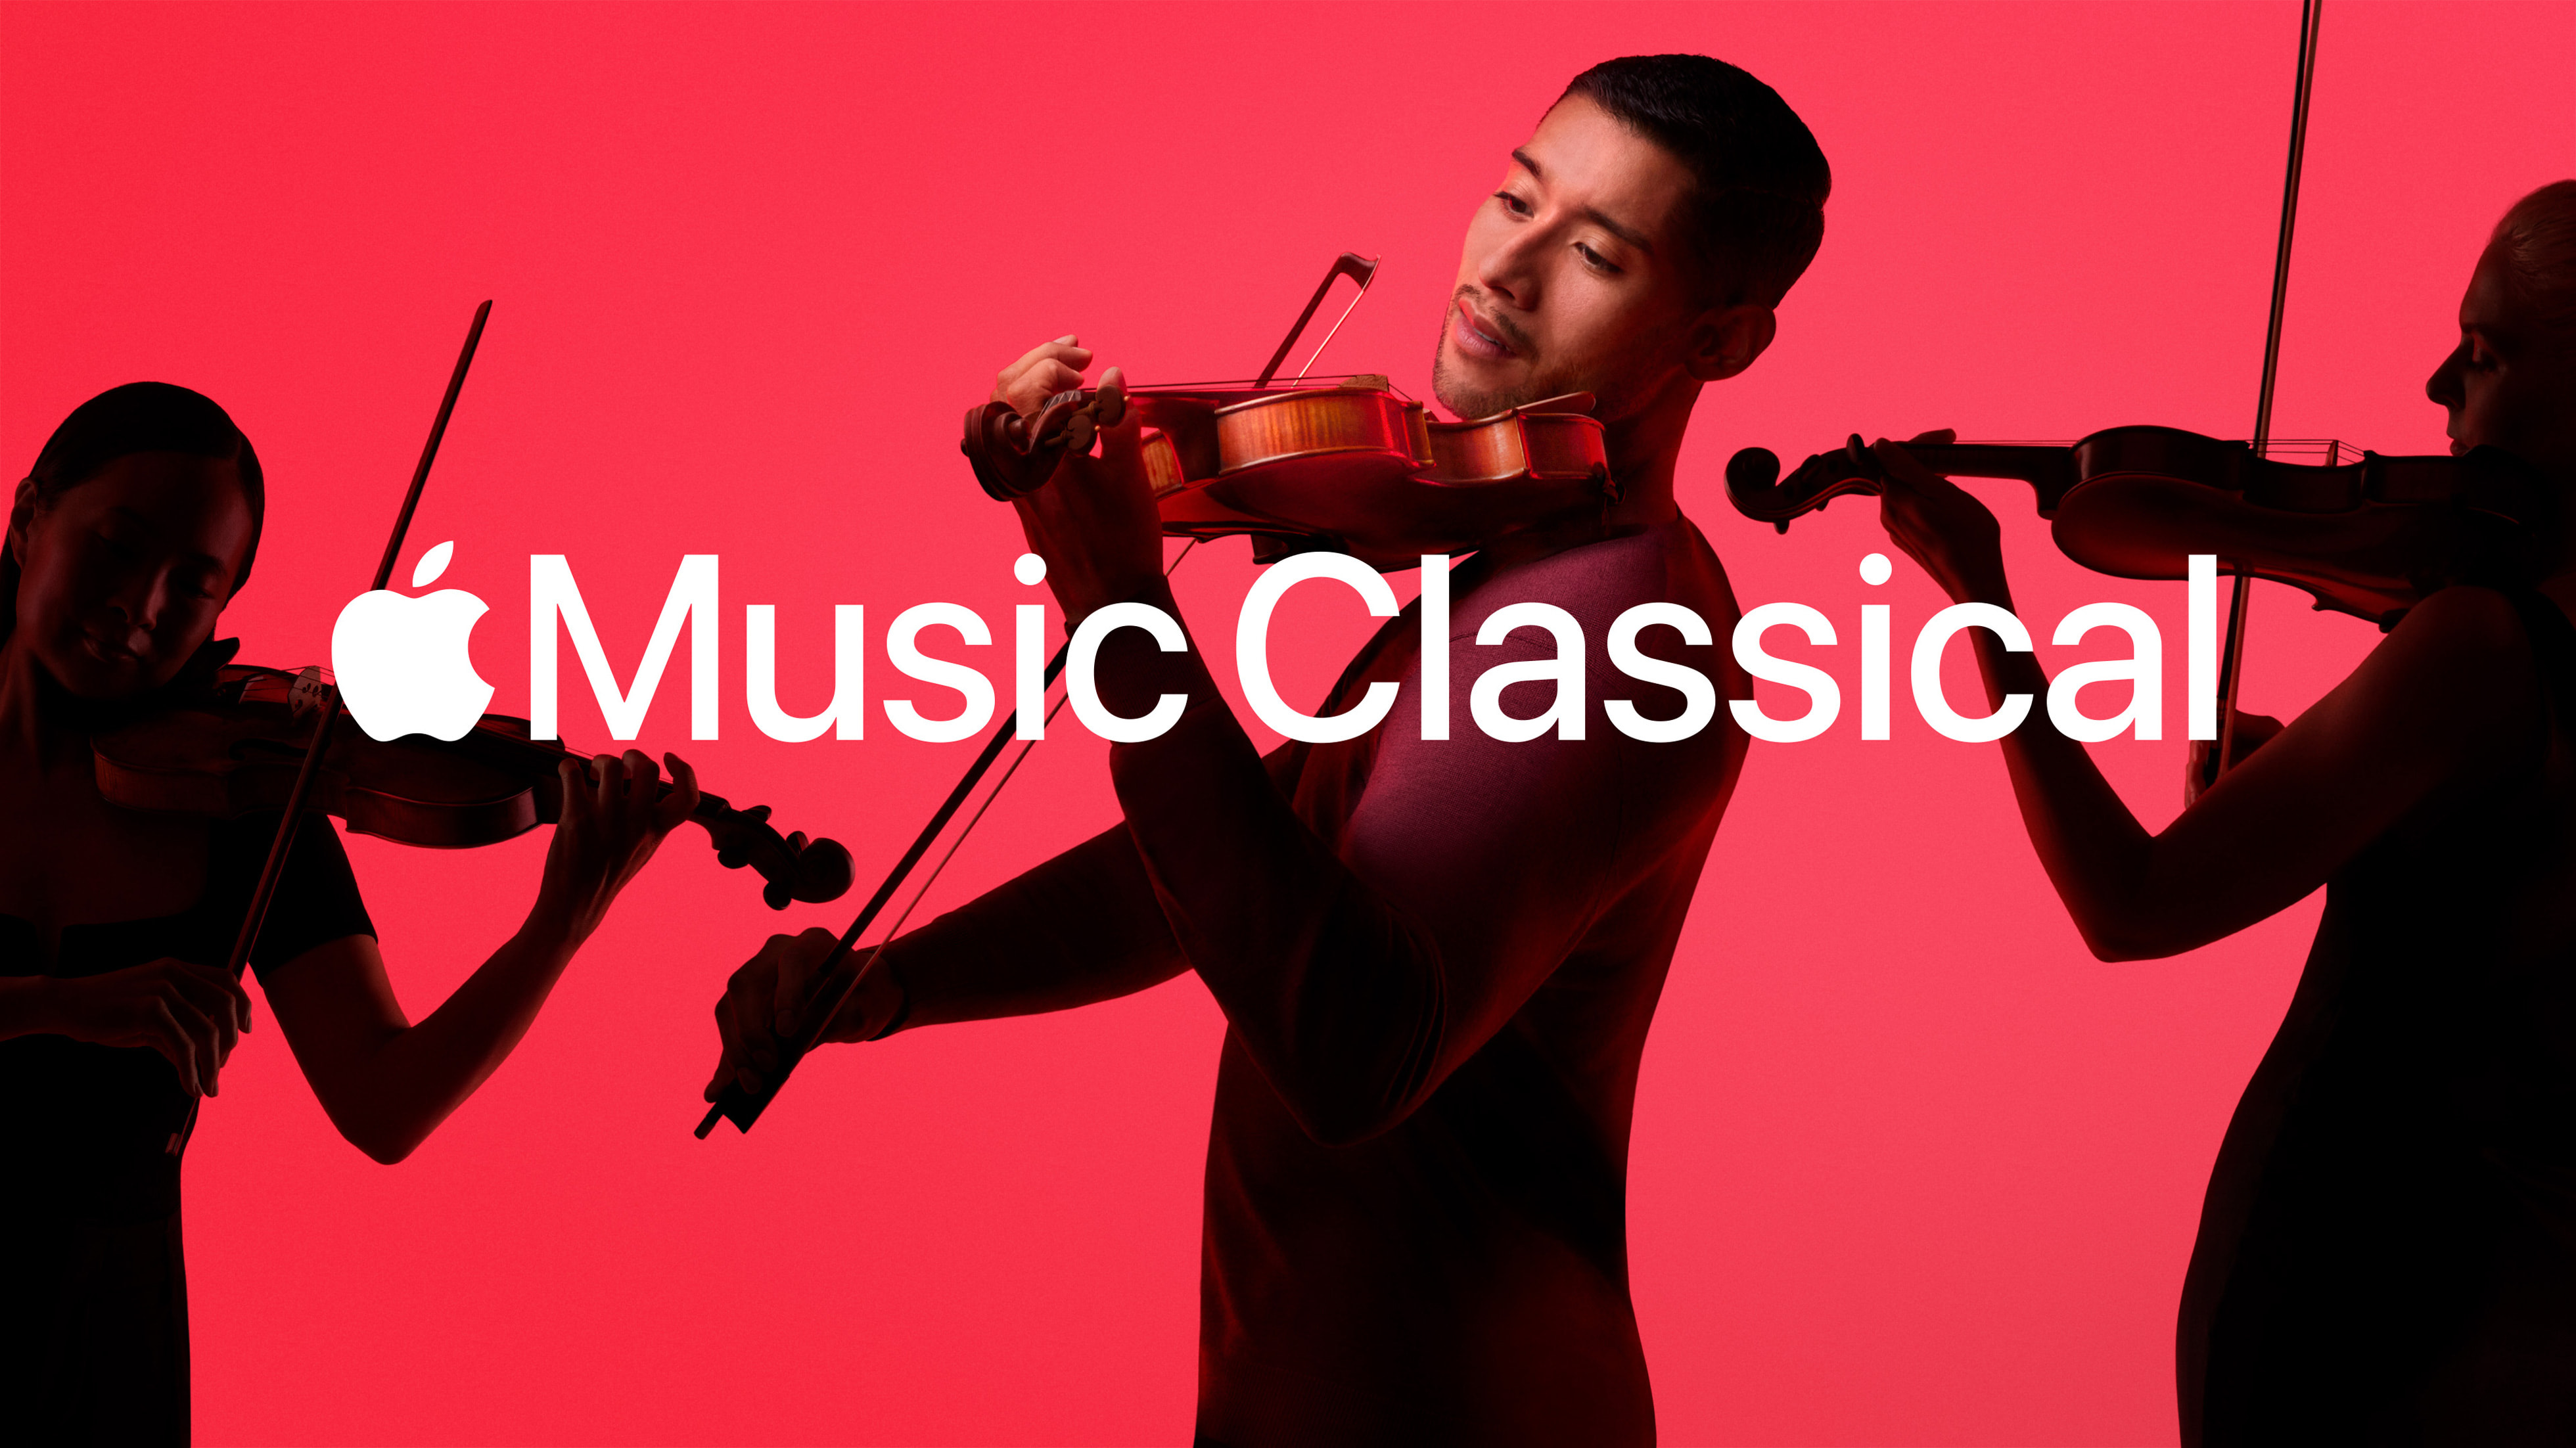 Cómo acceder desde Android a la app de música clásica de Apple